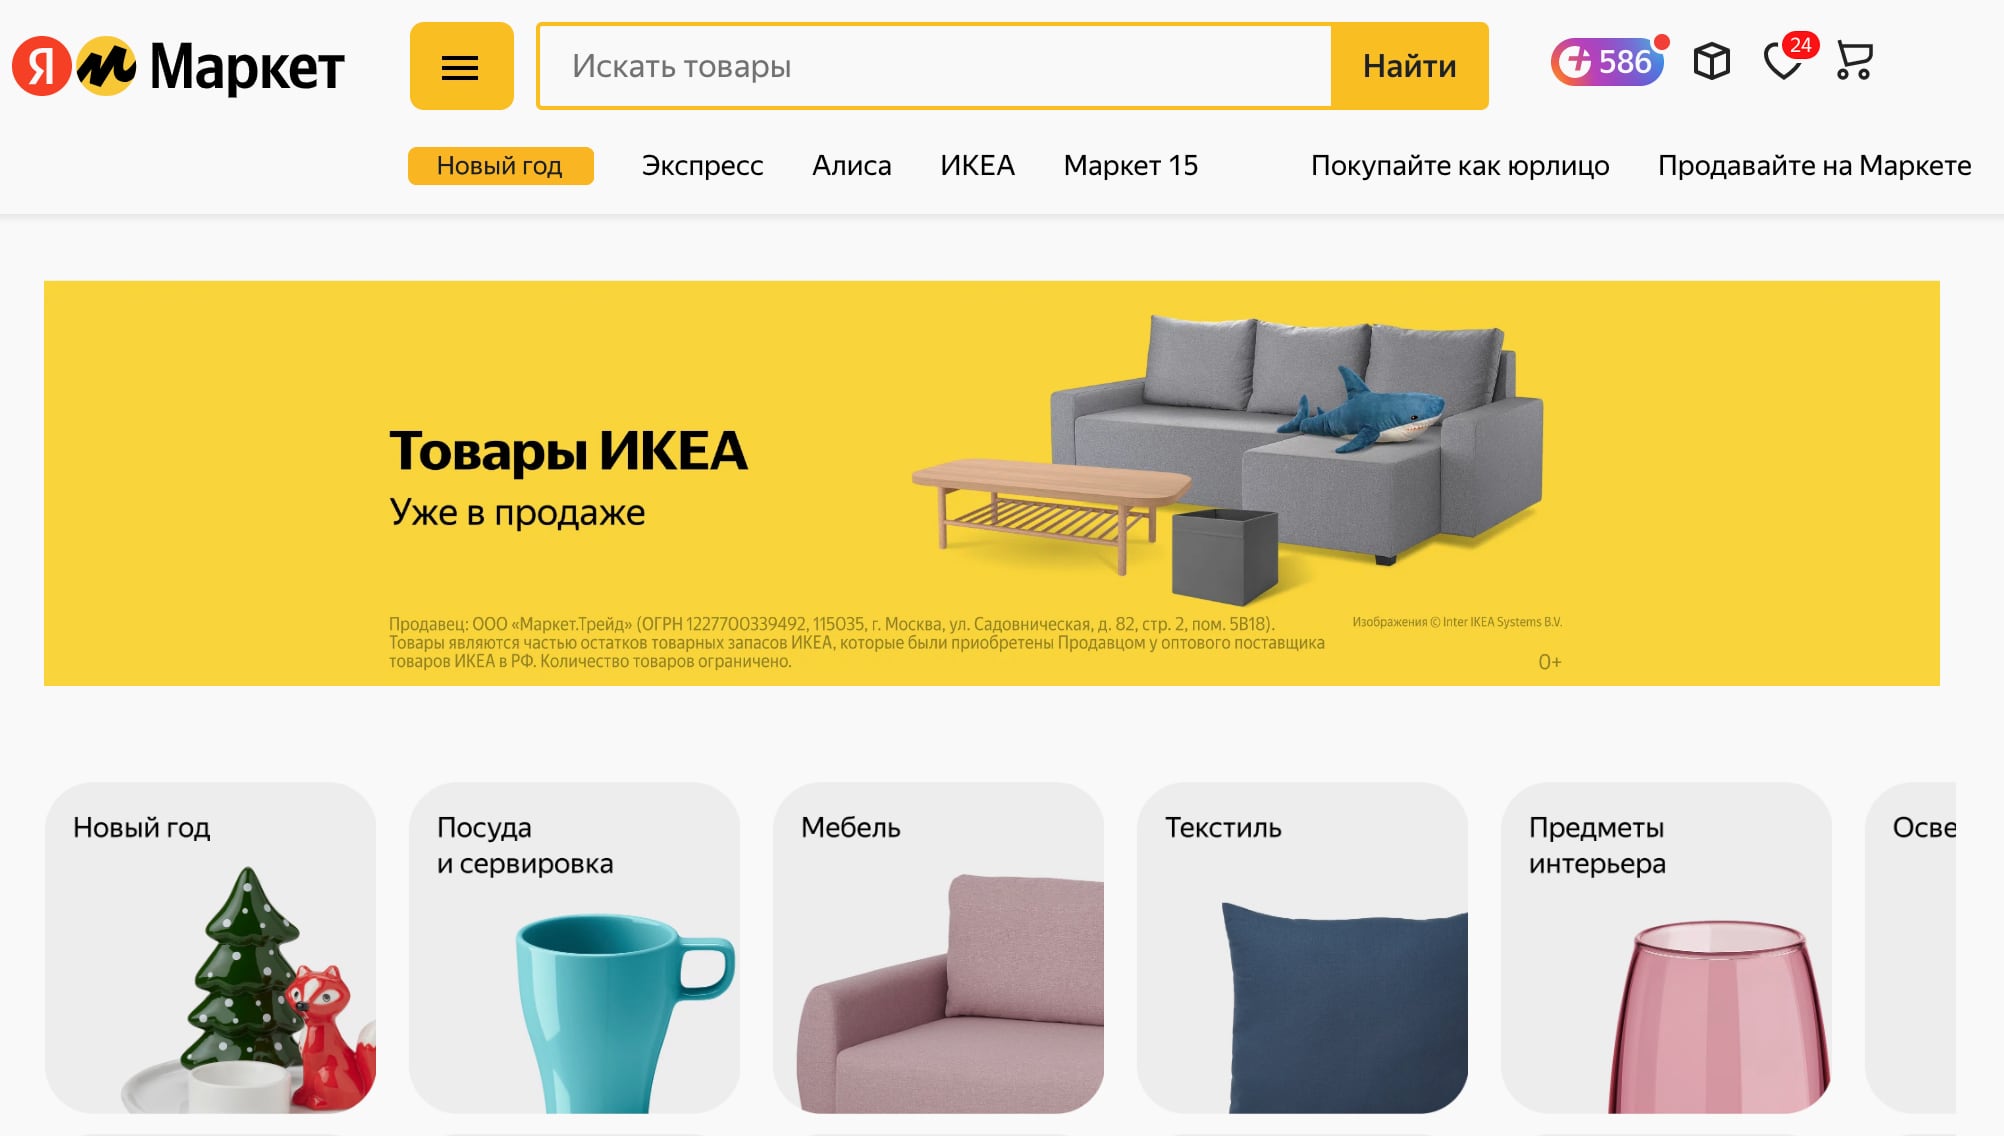 Яндекс Маркет запустил продажи товаров IKEA